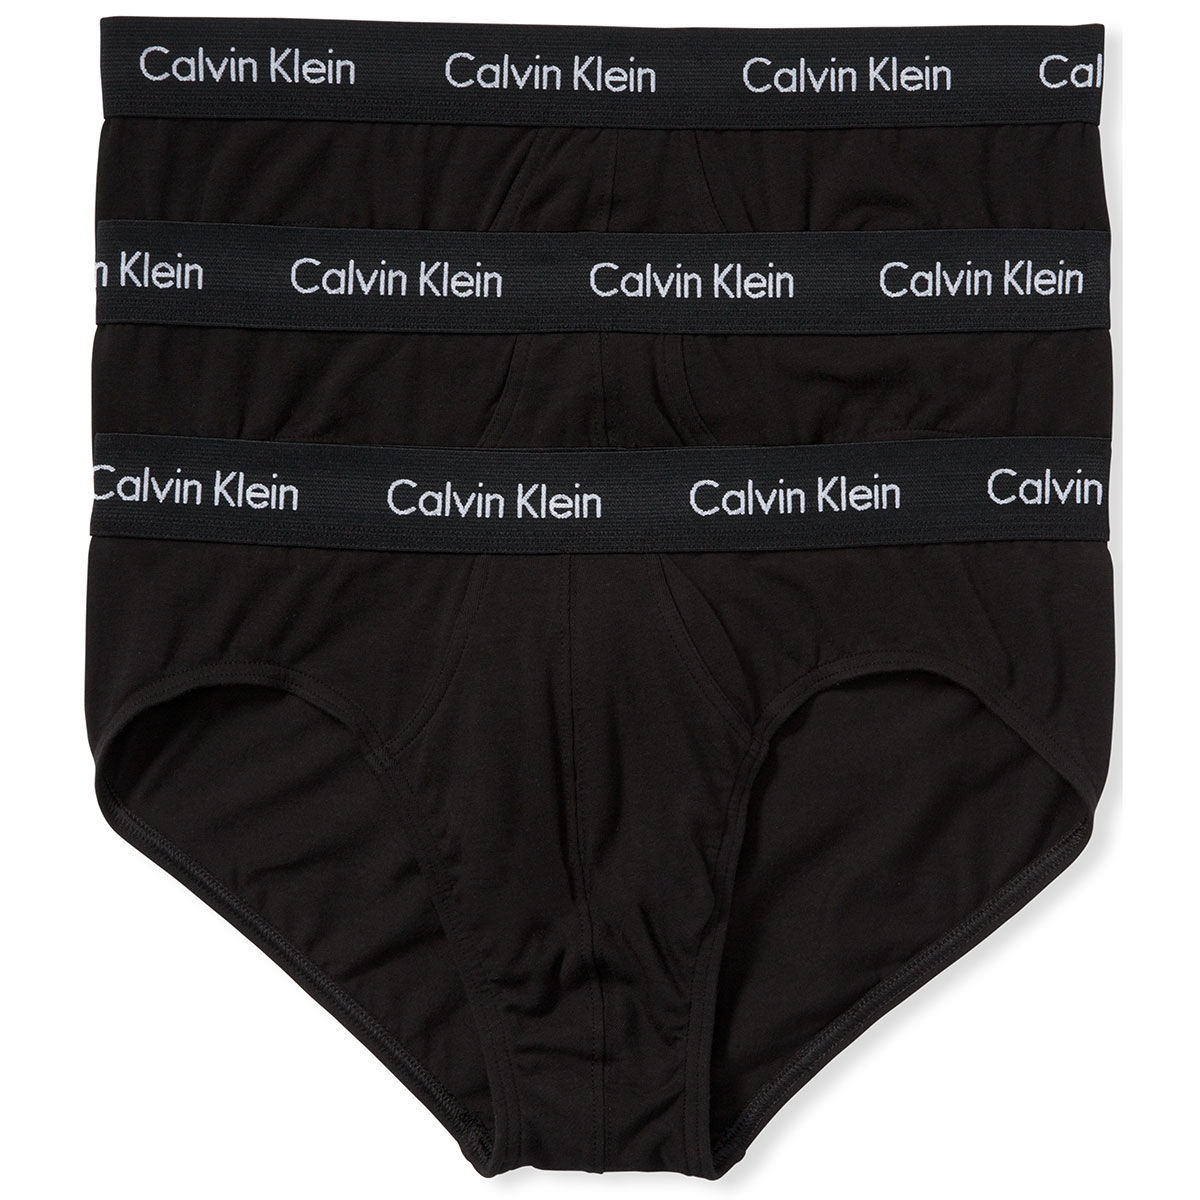 Calvin Klein Men's Stretch Hip Briefs, 3-Pack